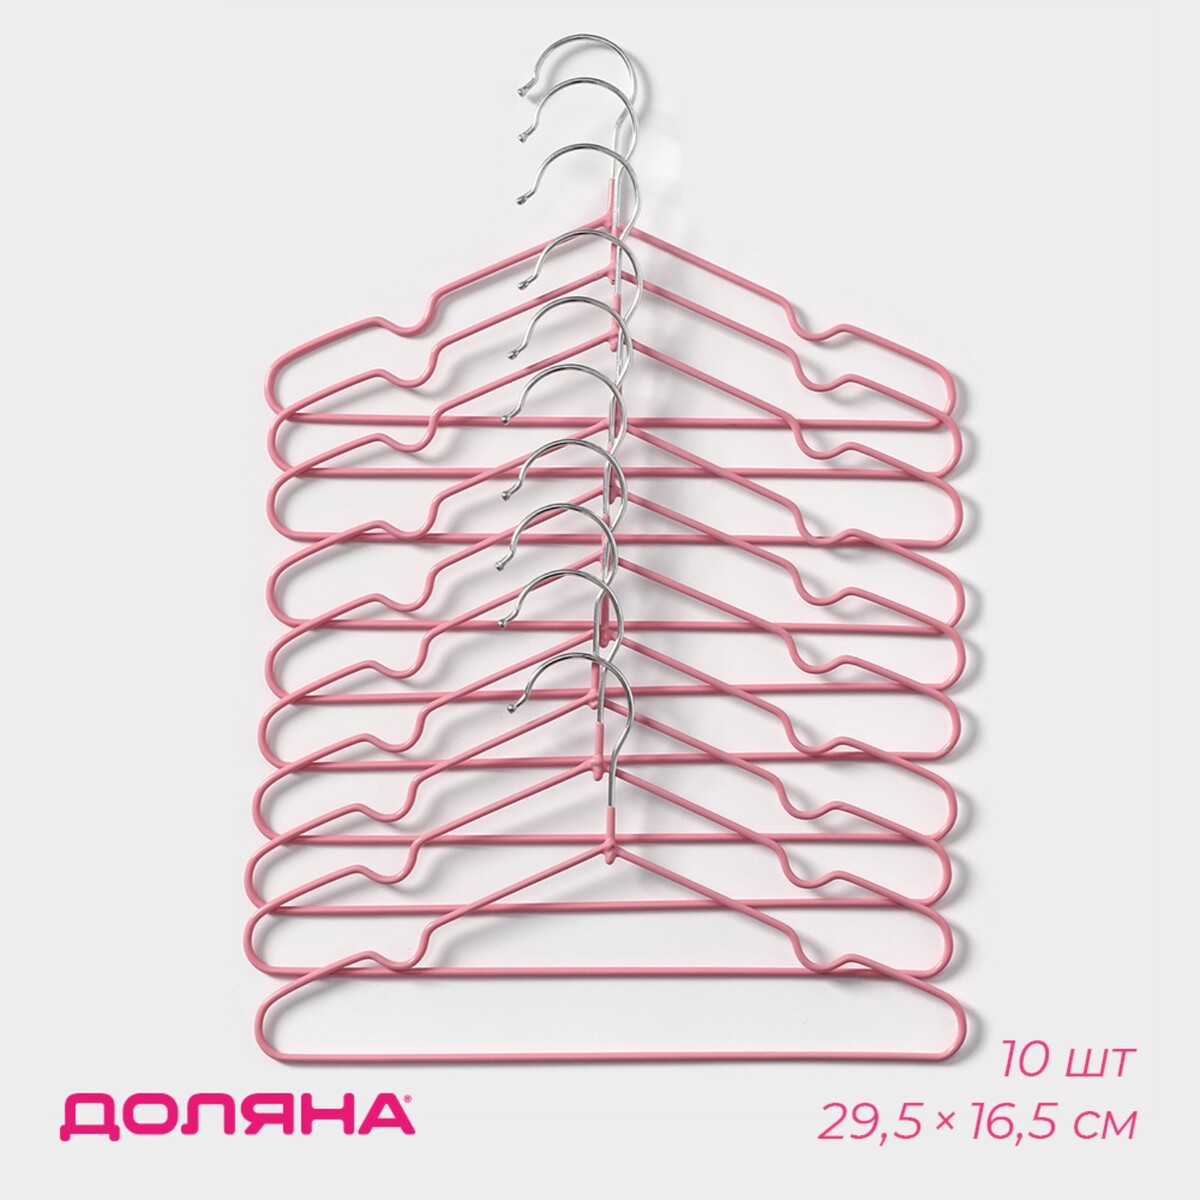 Плечики - вешалки для одежды антискользящие детские, металлические с пвх покрытием, набор 10 шт, 29,5×16,5 см, цвет розовый плечики вешалка для одежды ladо́m laconique 41 5×22 5×1 см розовый